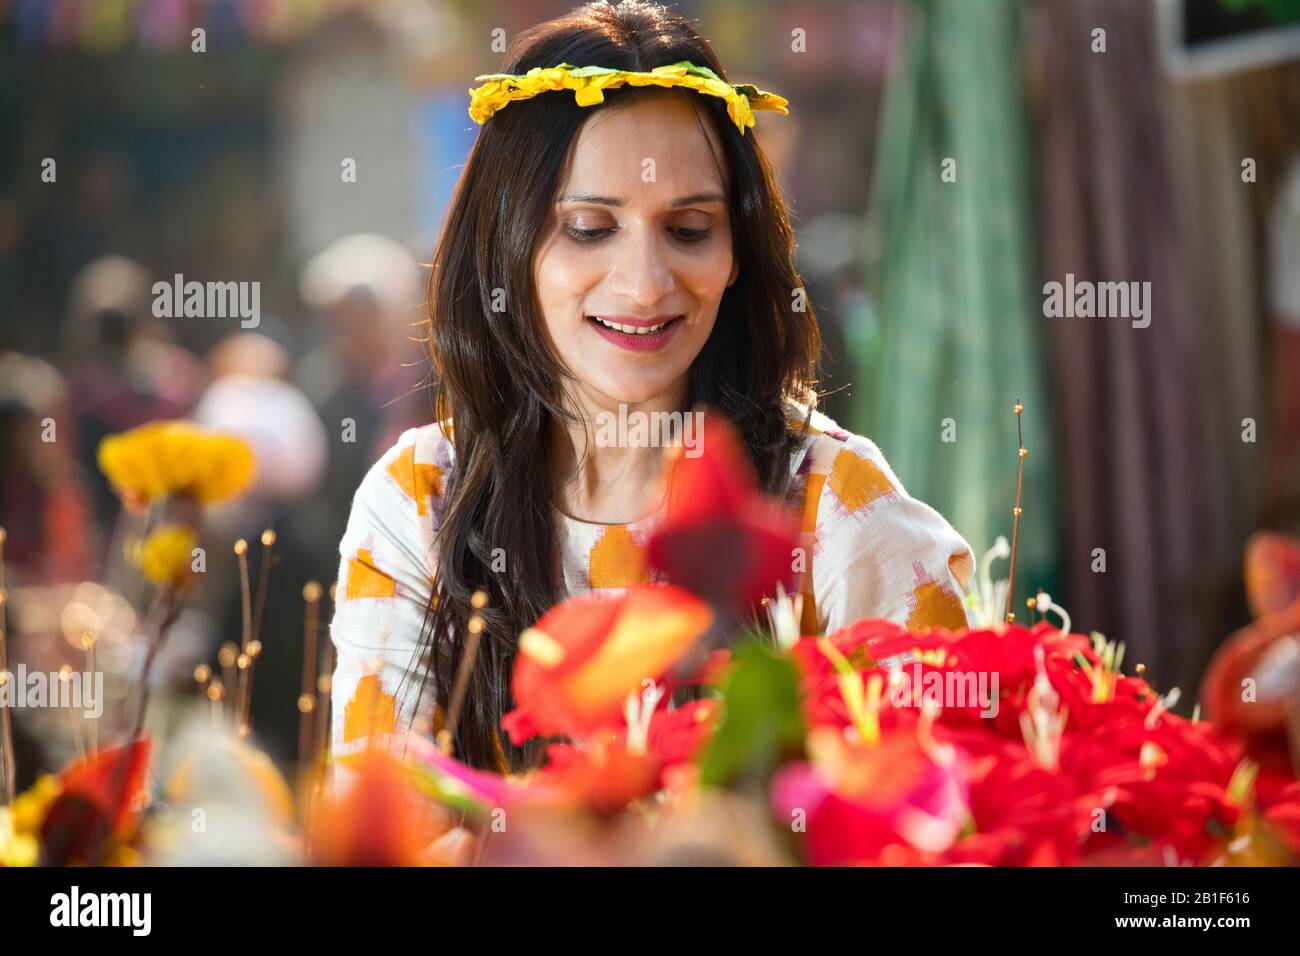 Mujeres que intentan en tiara floral en el mercado de la calle Foto de stock